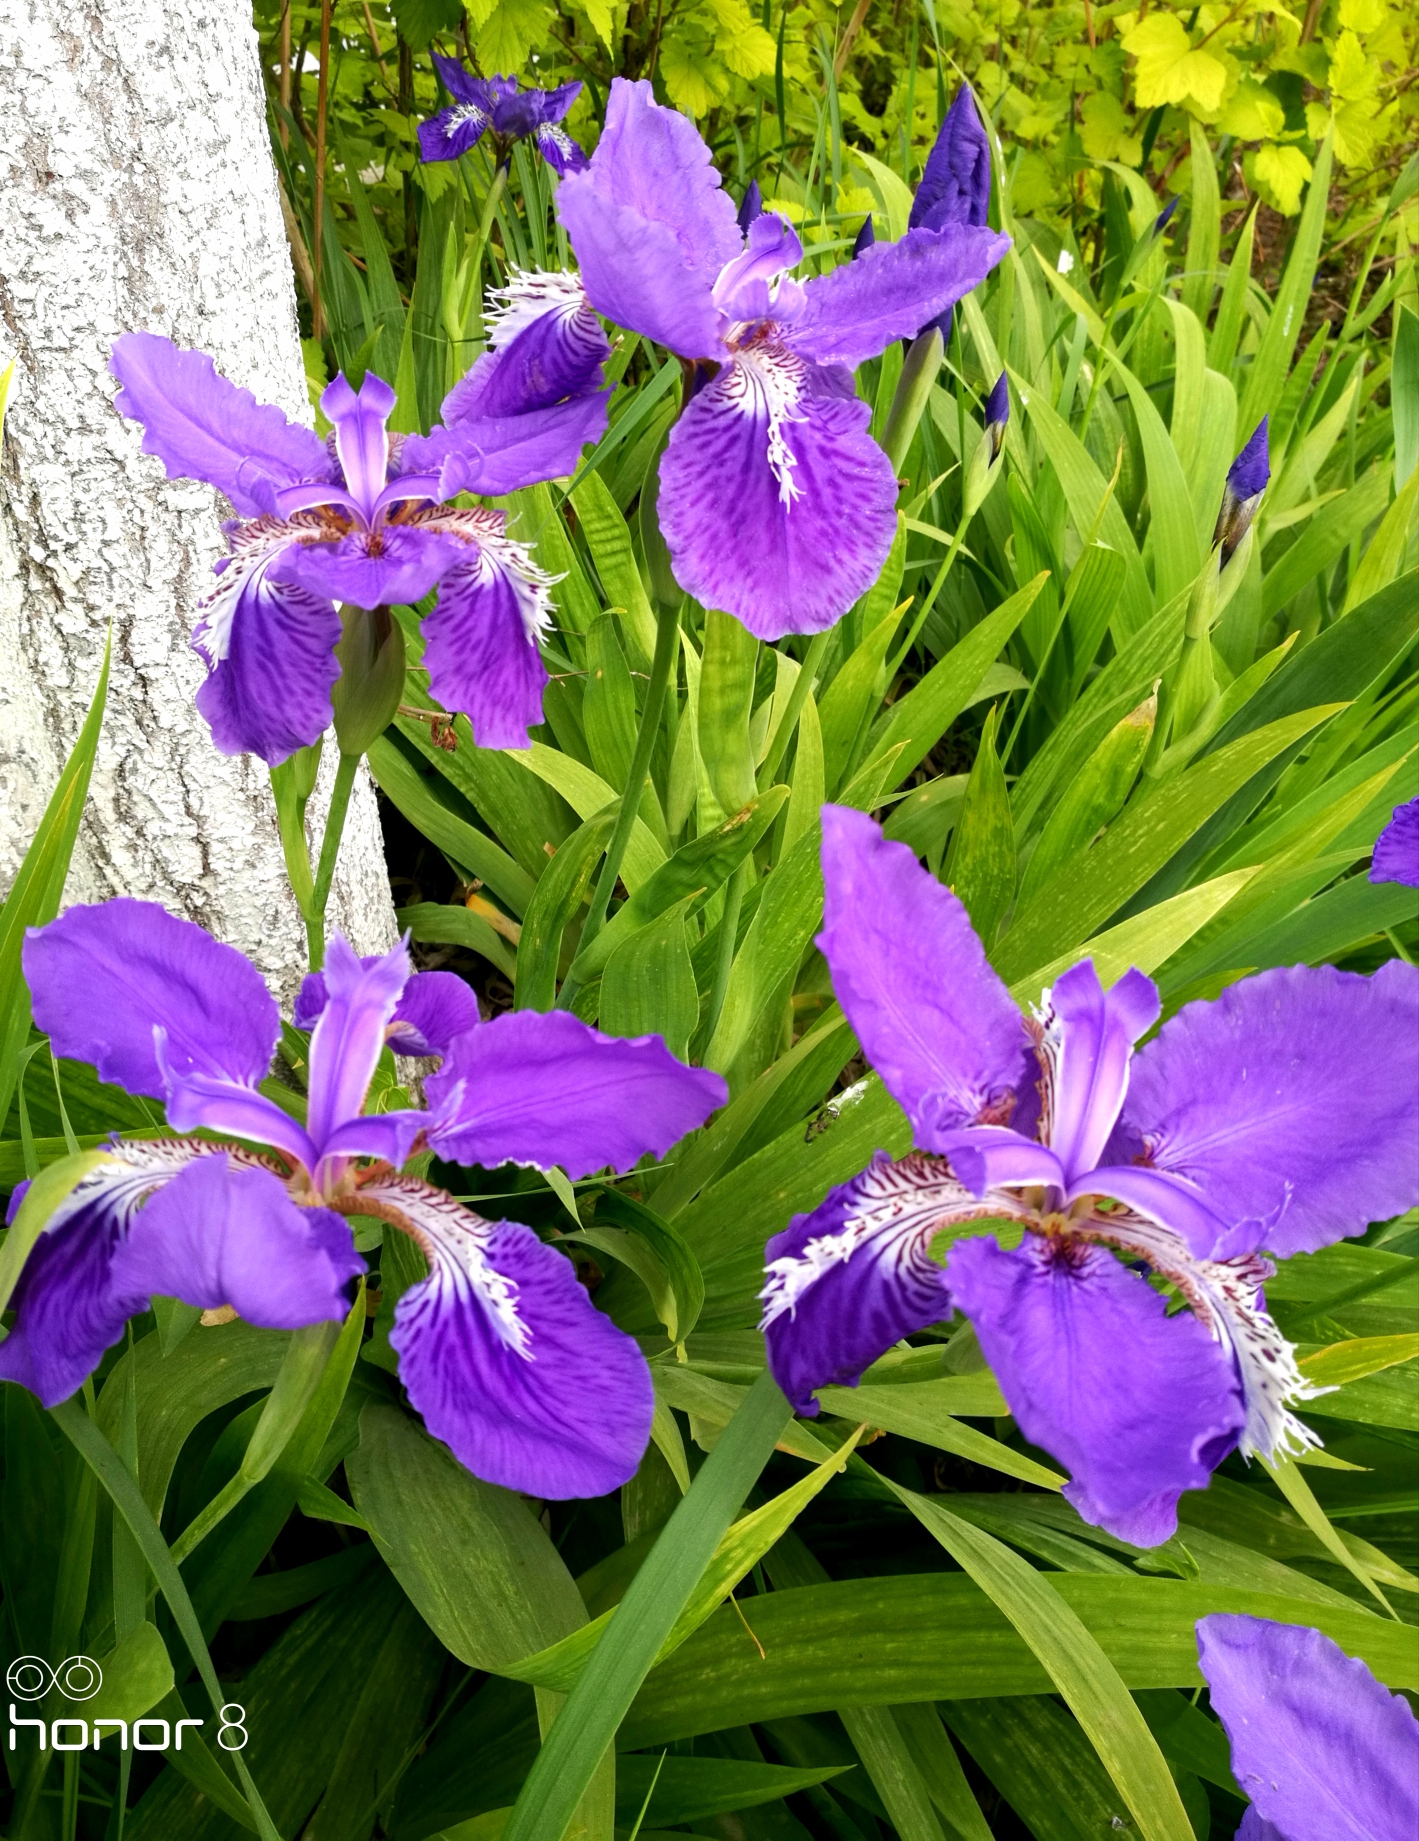 紫鸢尾花的花语是——爱意,吉祥与信仰者的幸福